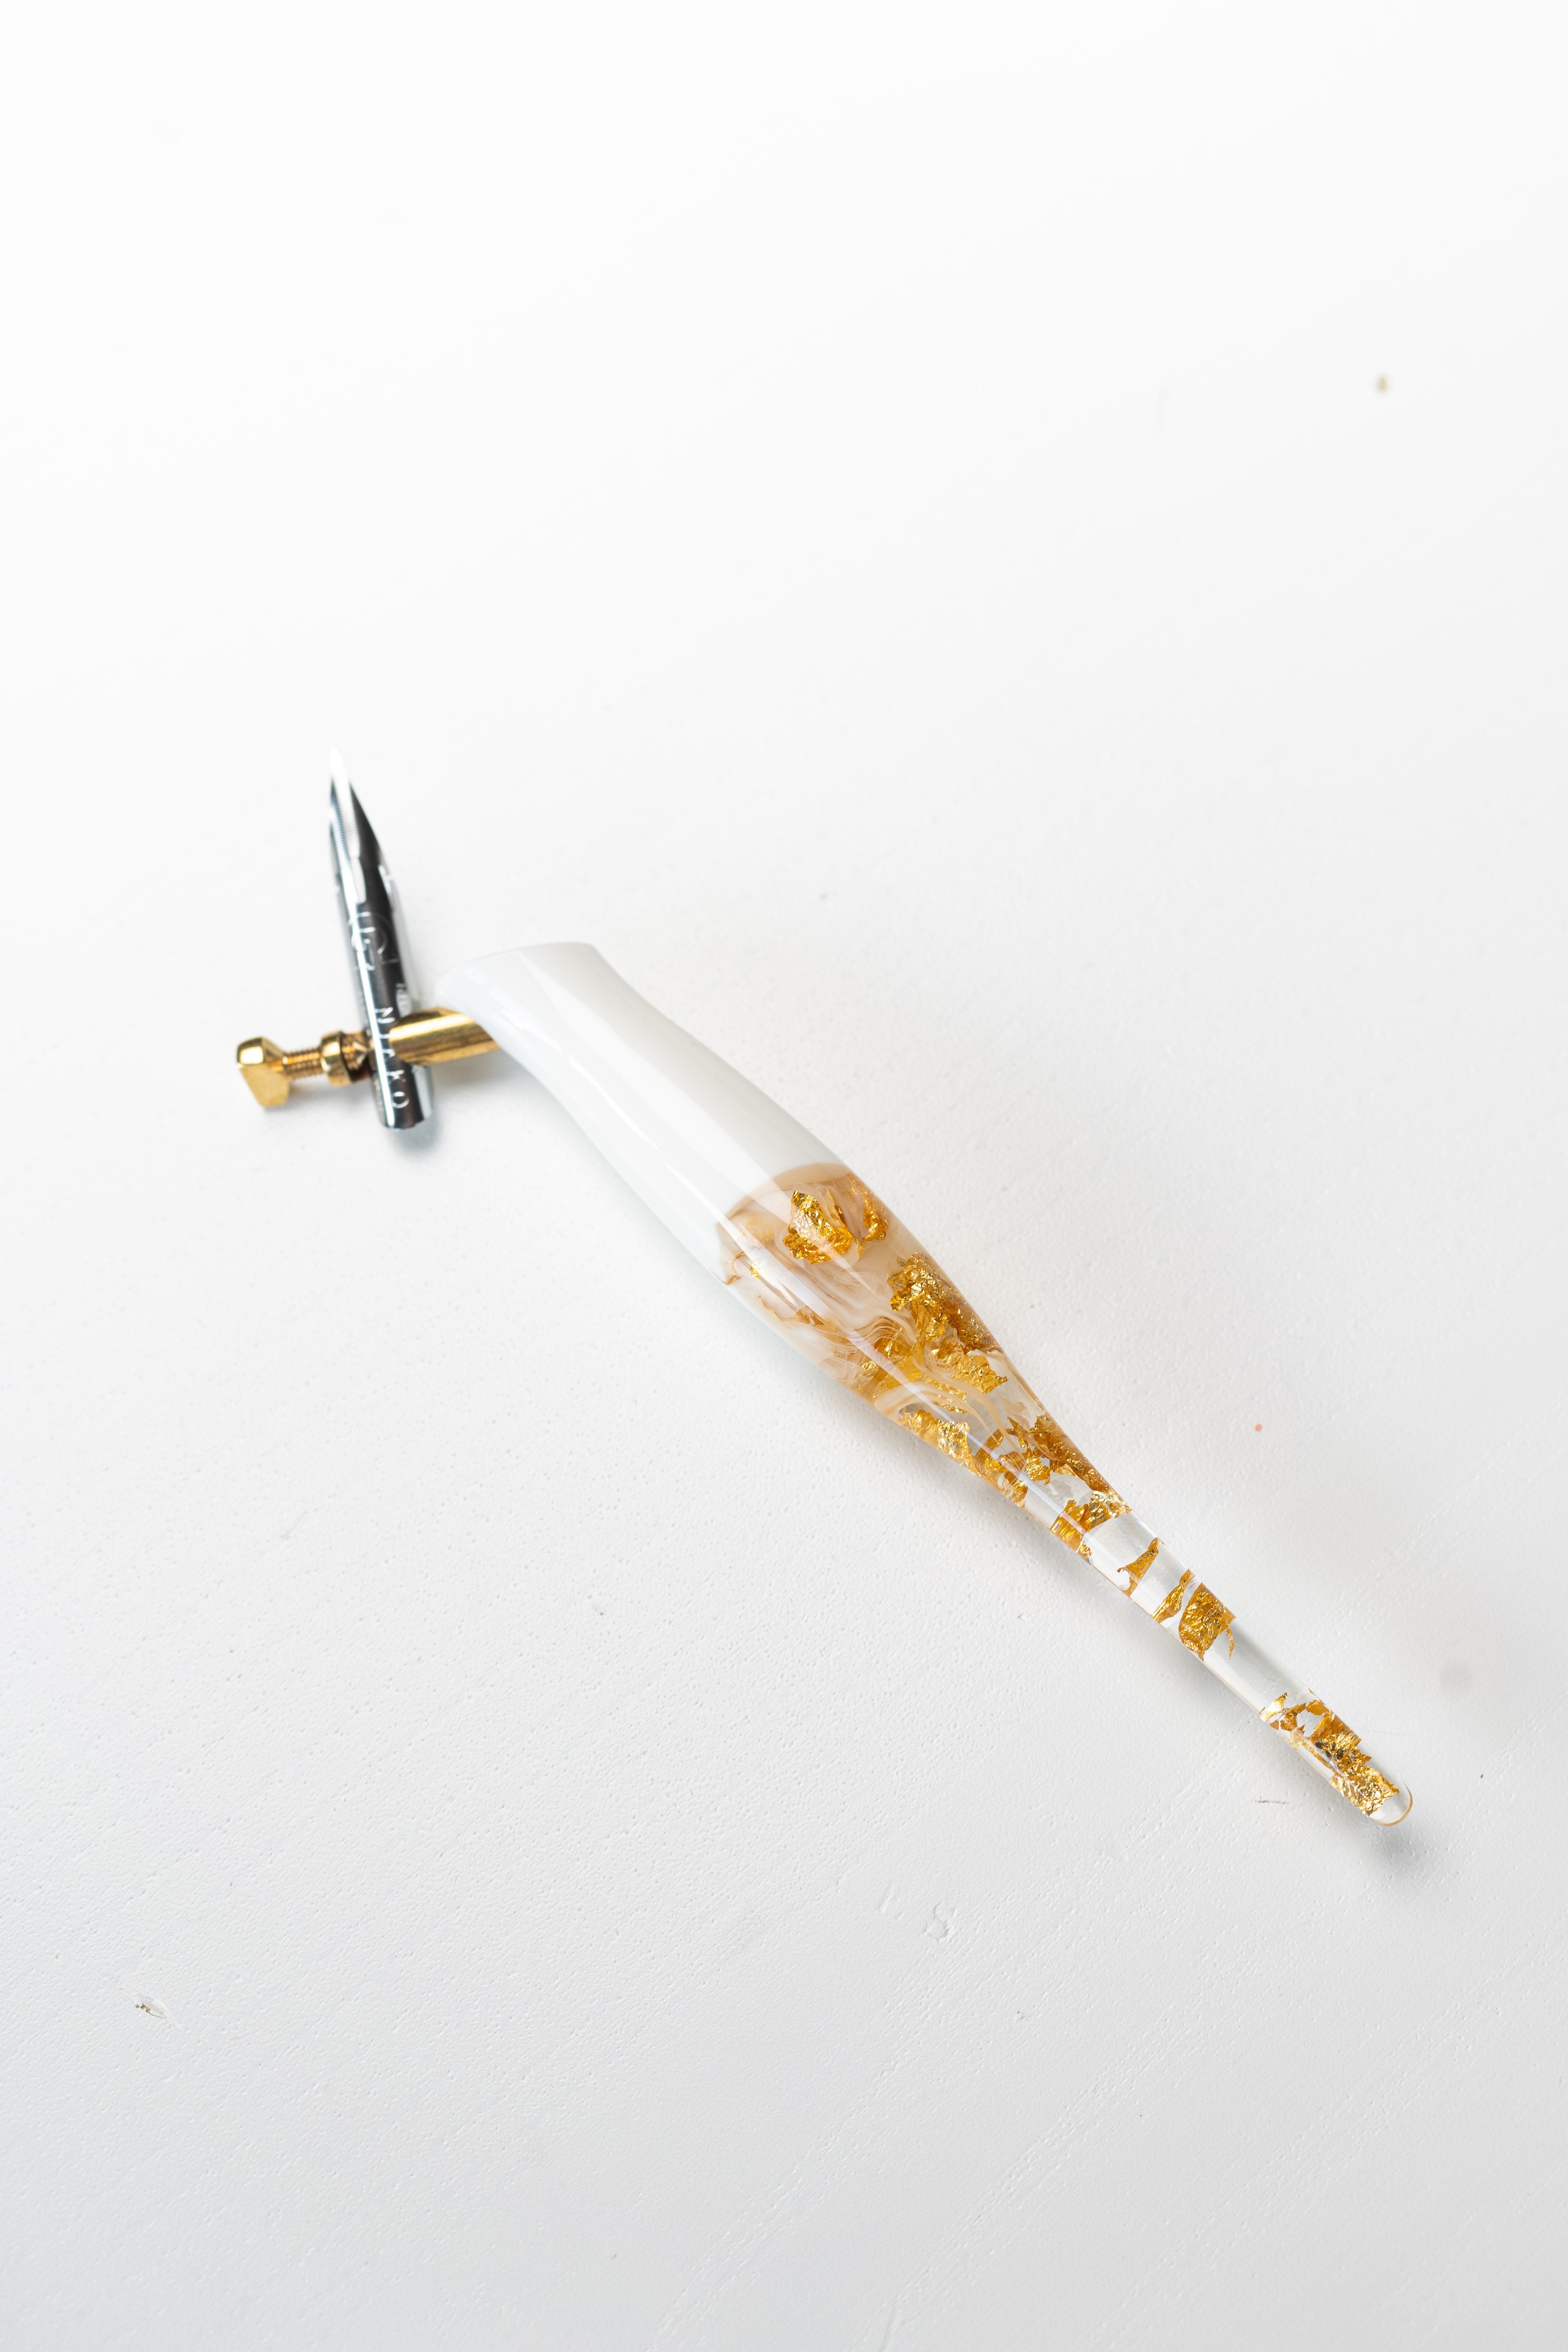 Rolfpens — Oblique Pen Holder Ergonomic o Minimal Zen